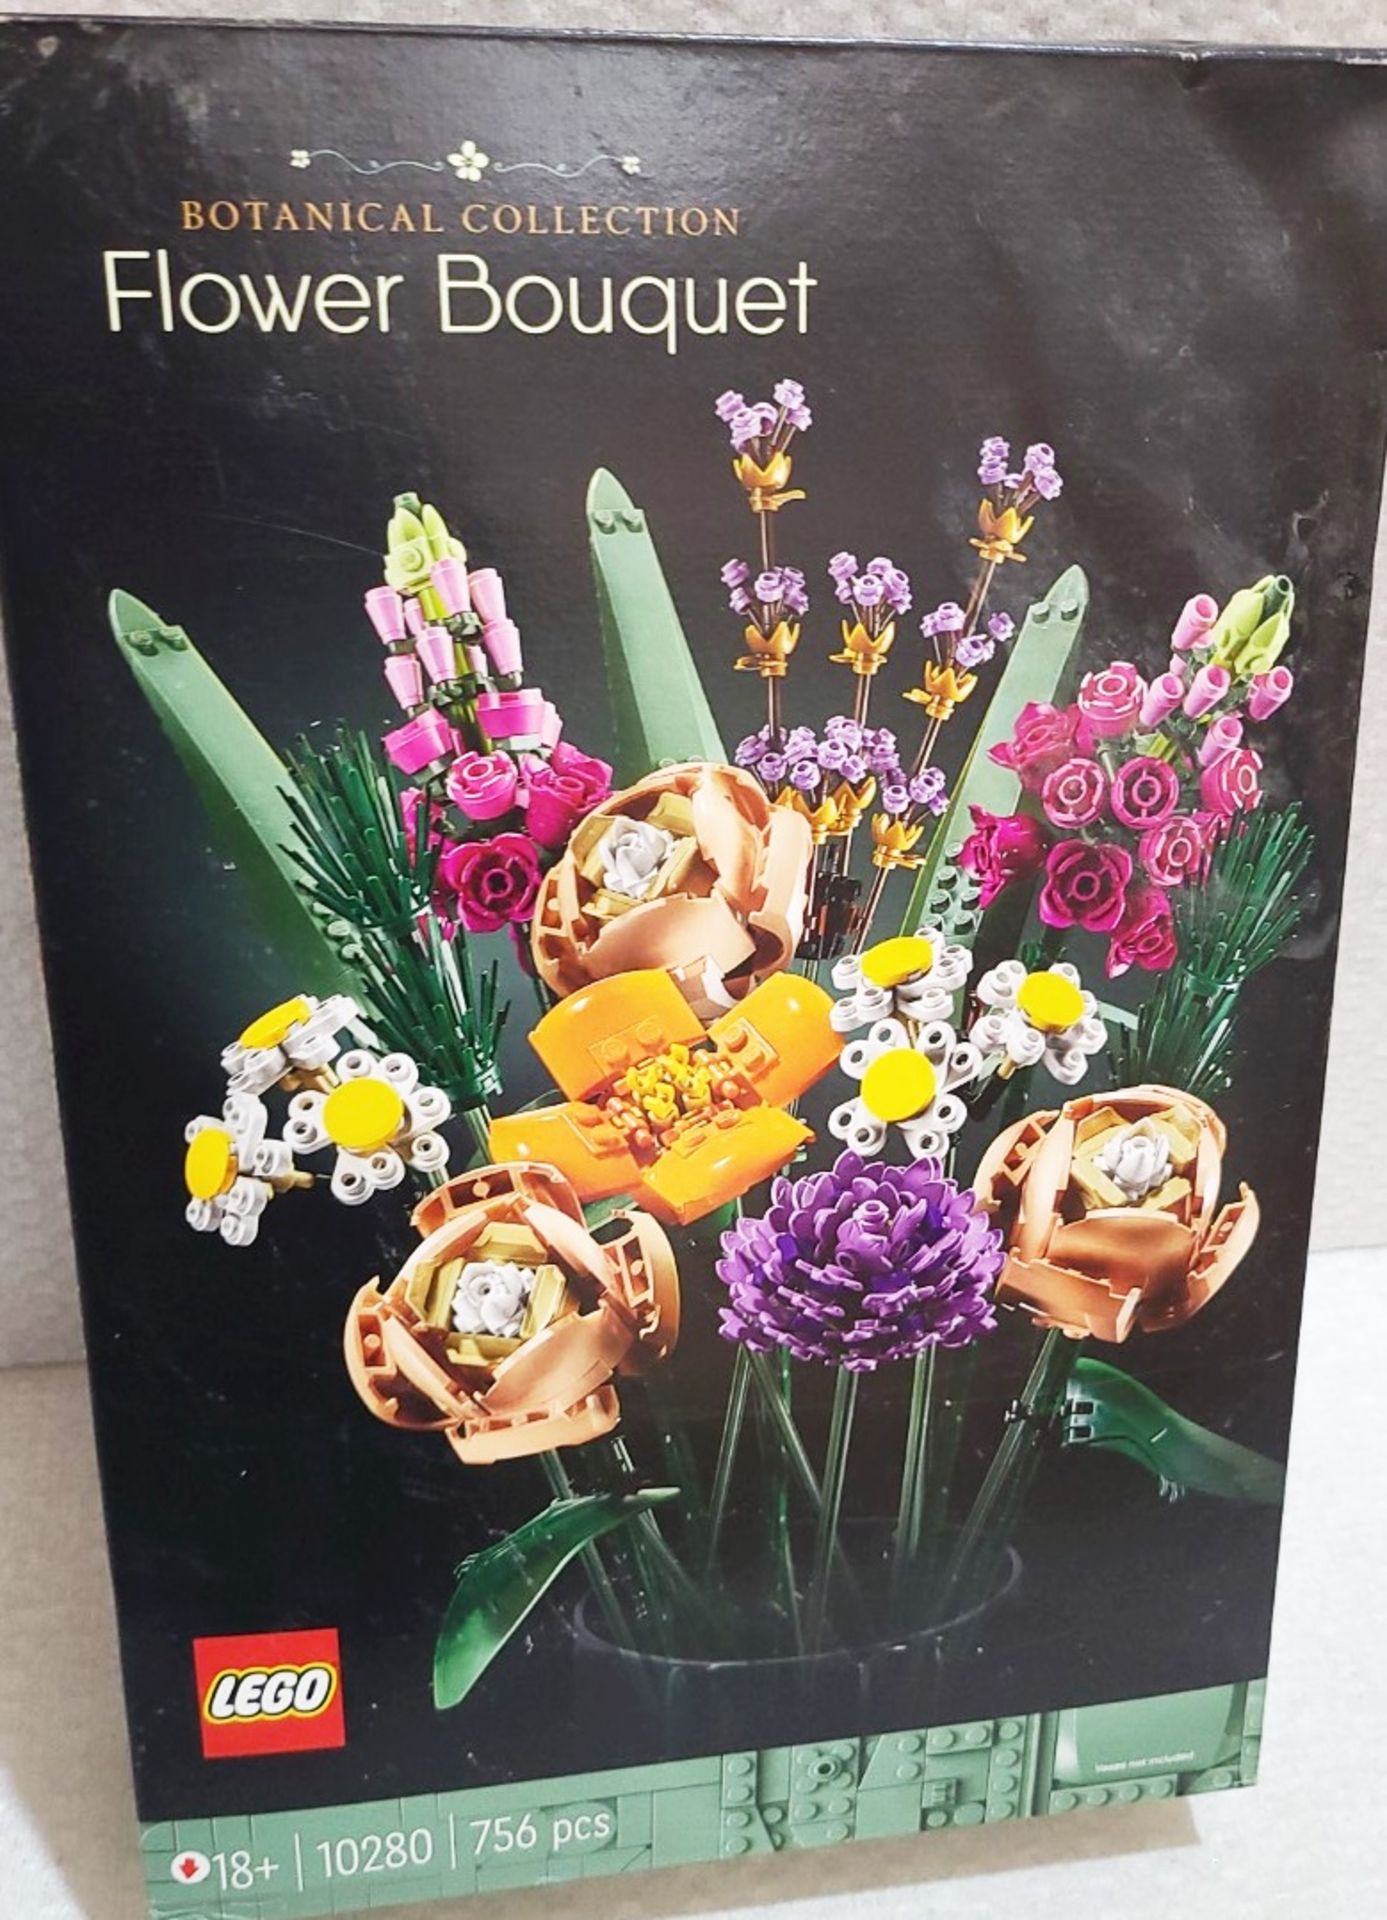 1 x LEGO Creator Expert Flower Bouquet Set 10280 - Original Price £54.95 - Unused Boxed Stock - Ref: